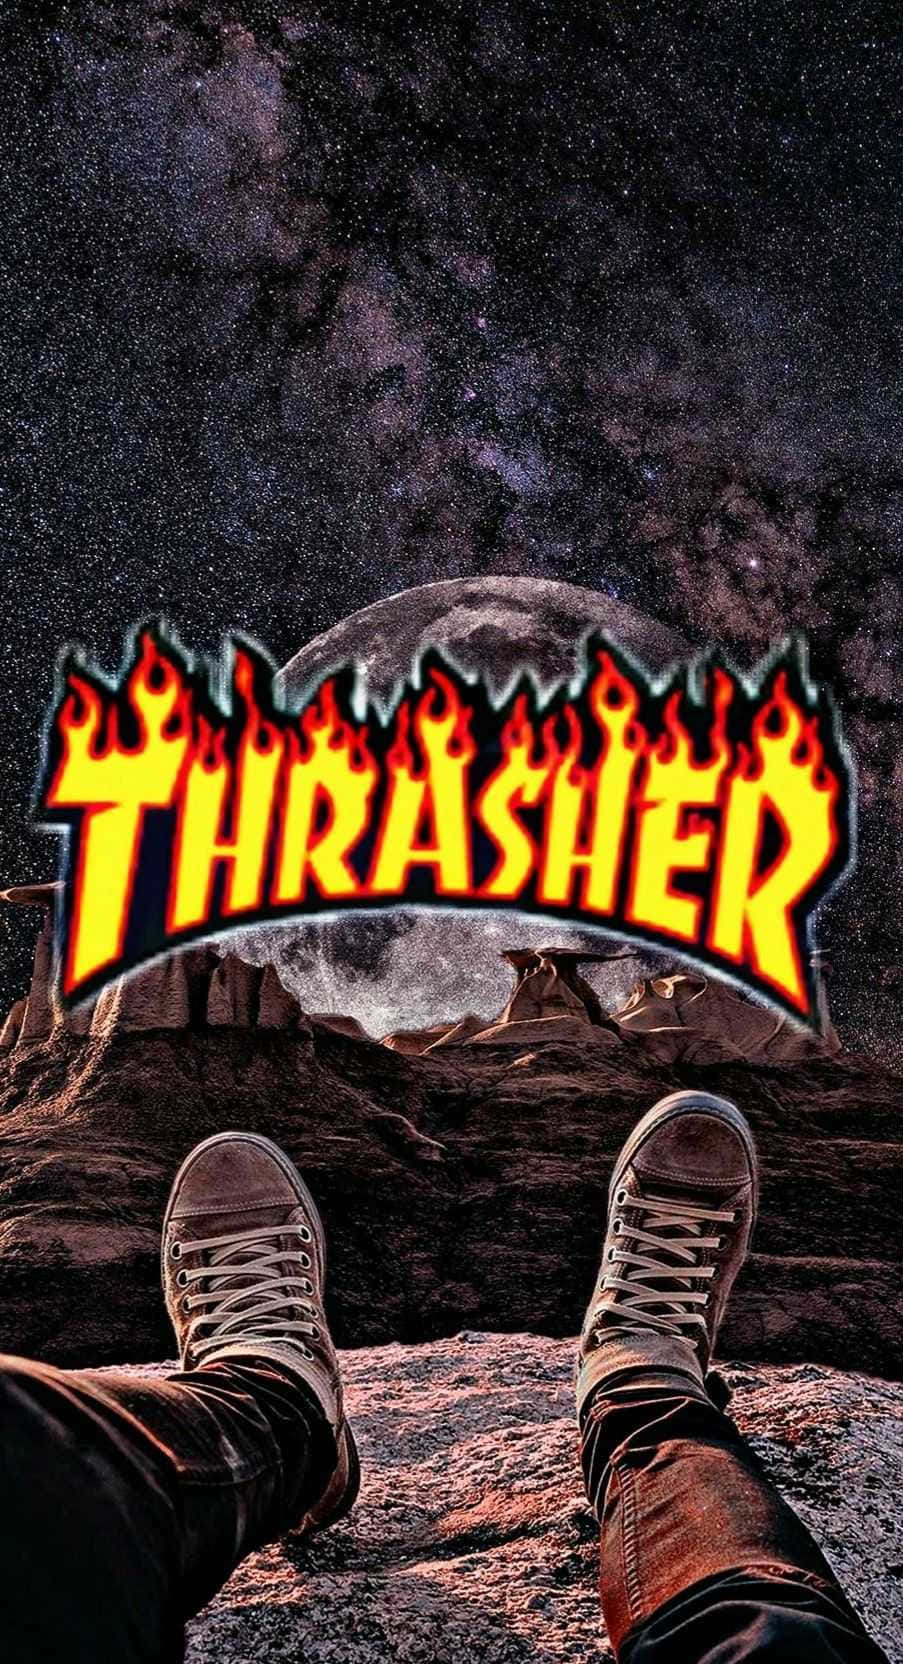 Thrasher - Thrasher - Thrasher - Thrasher - Thrasher - Th